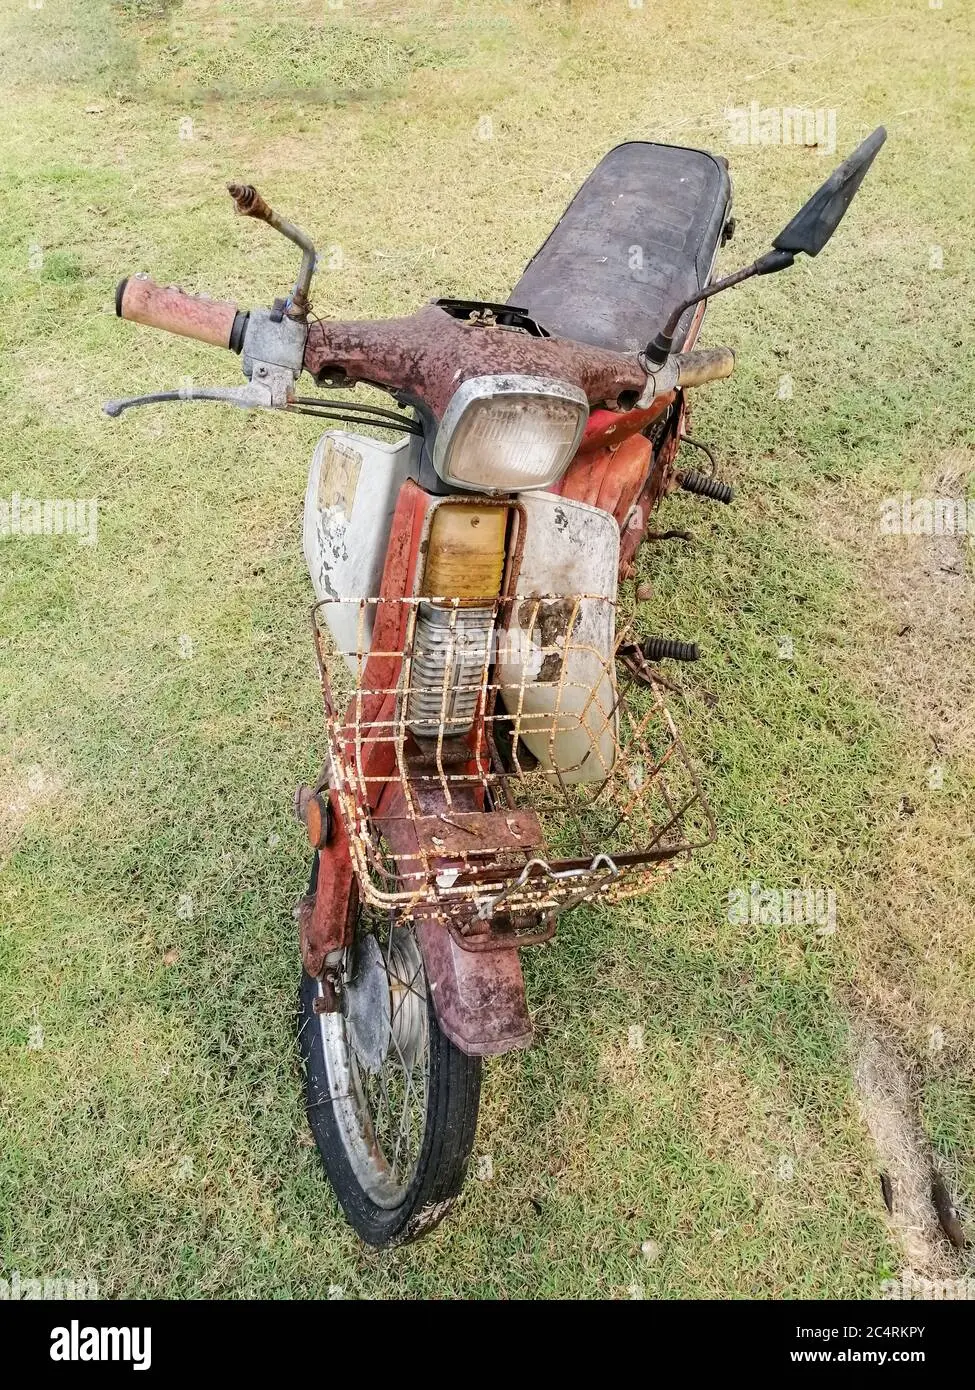 moto vieja - Qué puedo hacer con una moto que ya no sirve